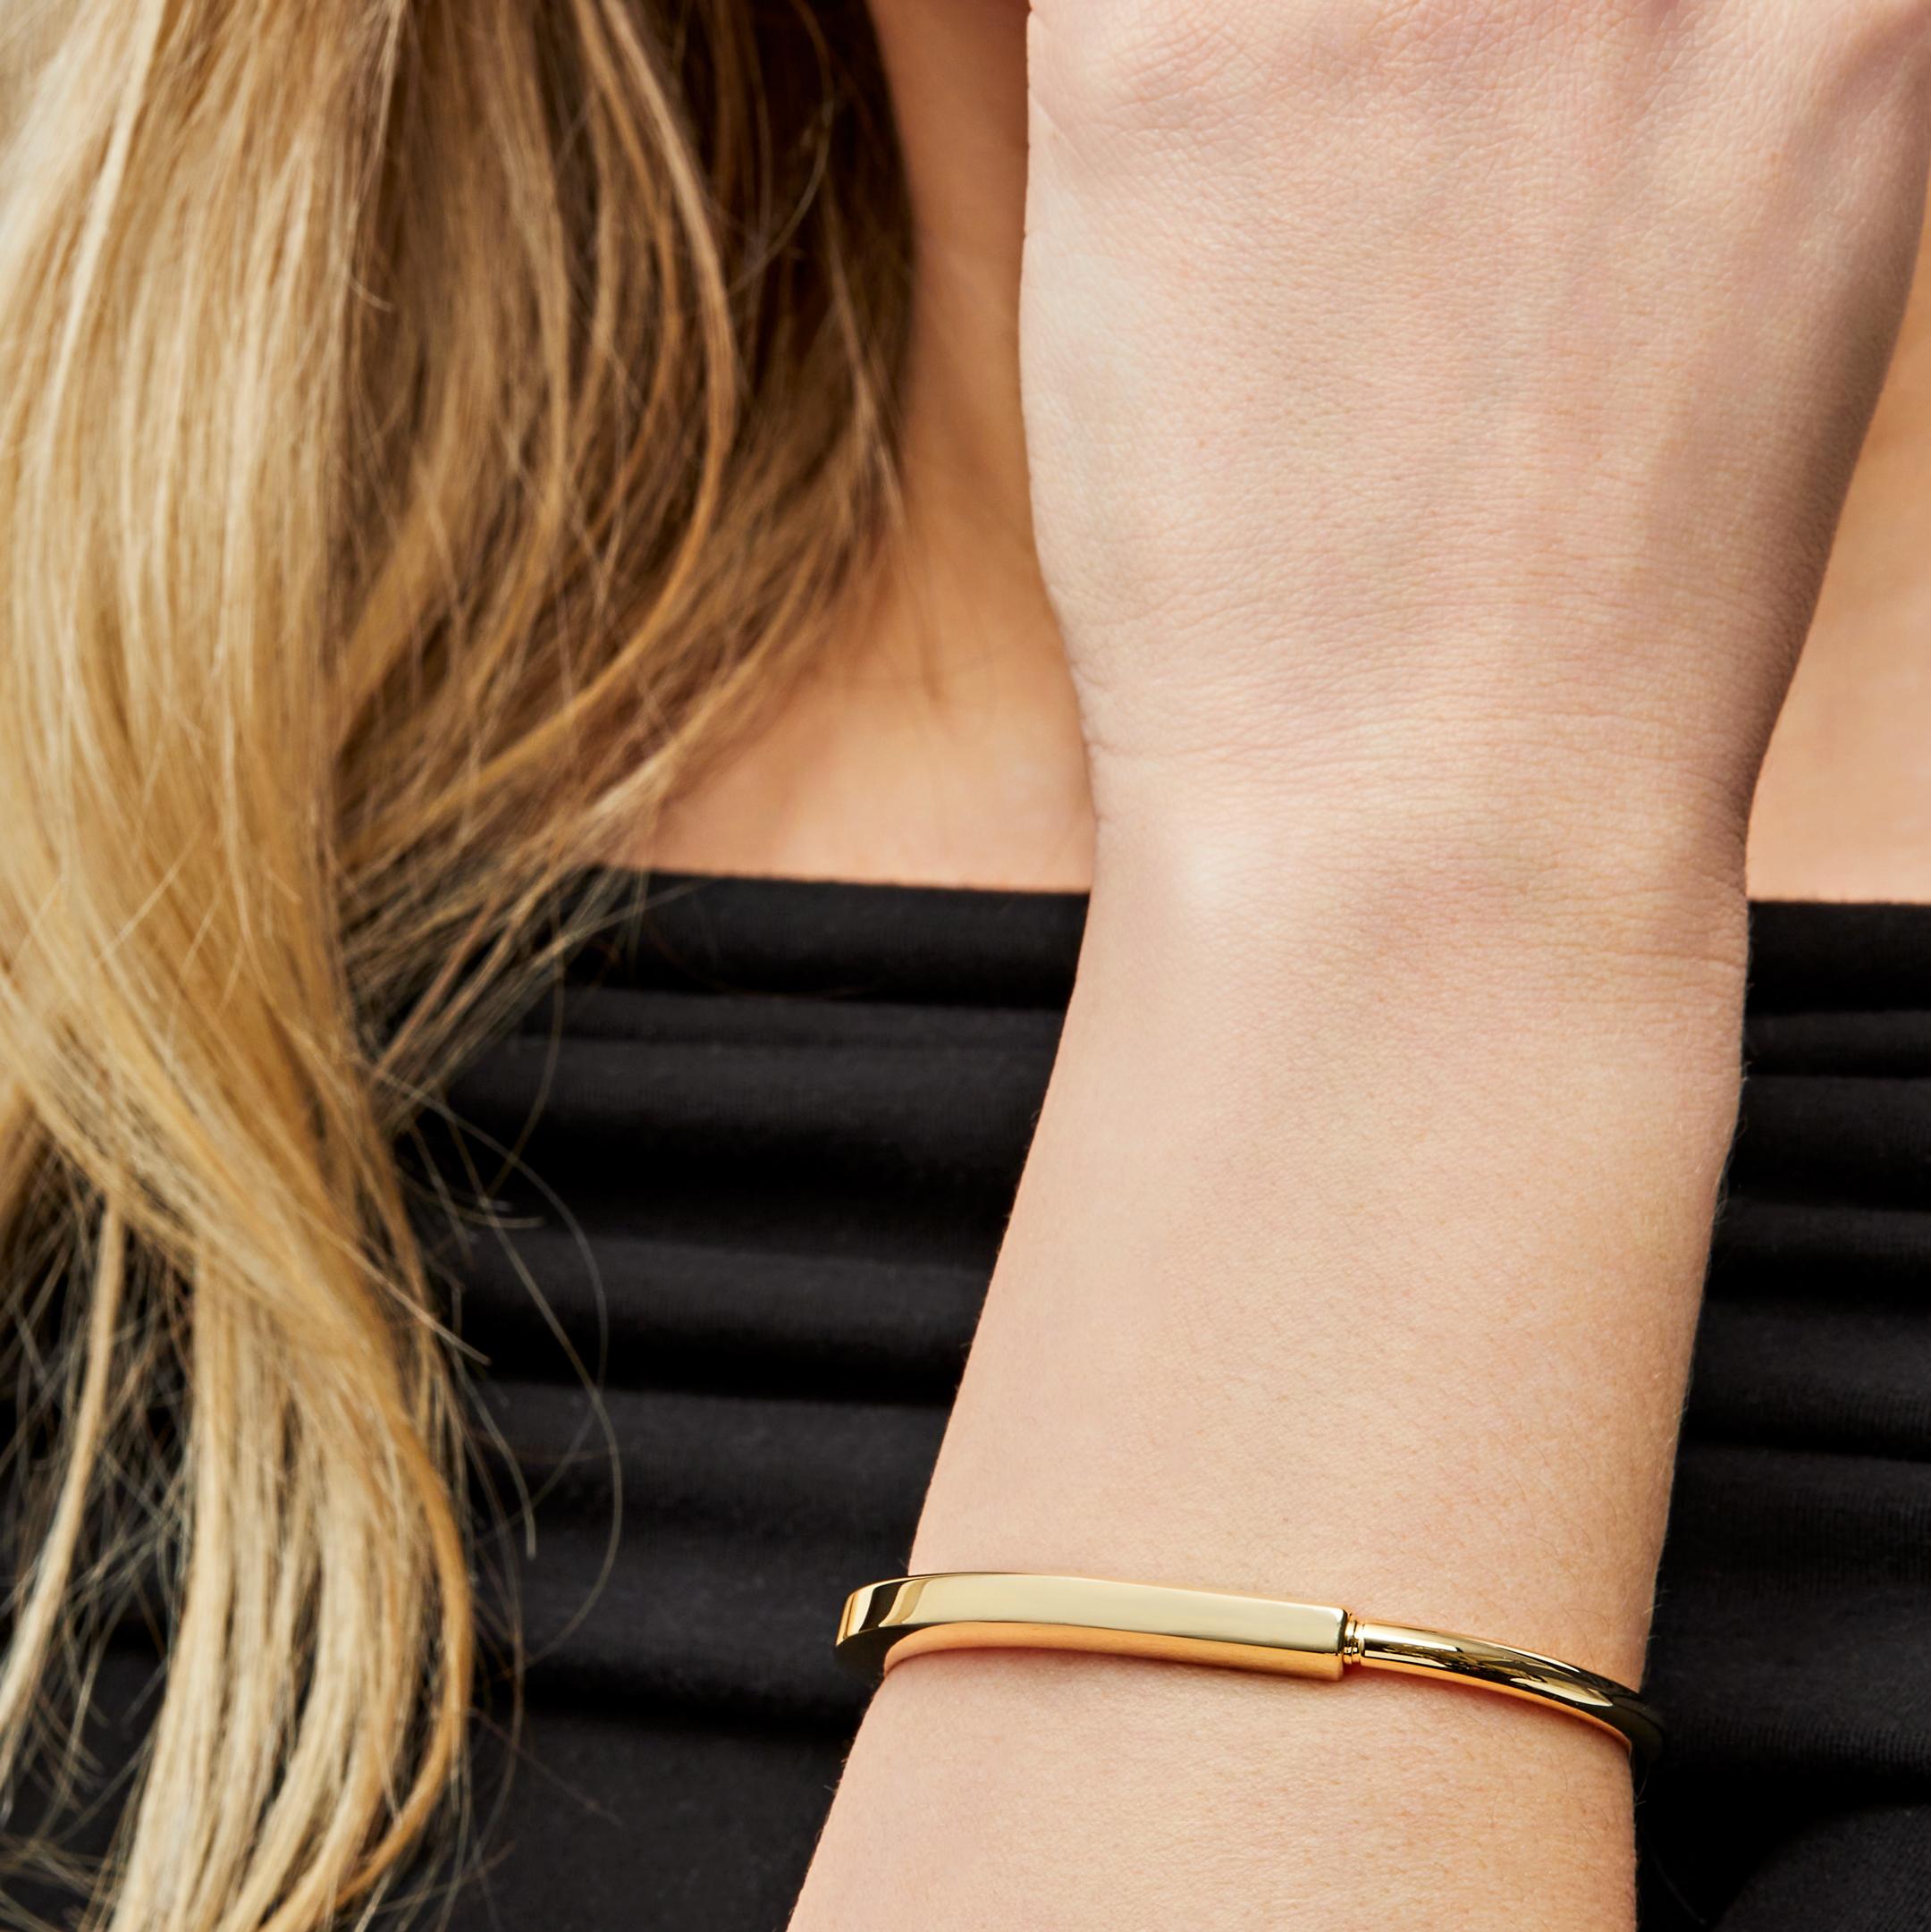 Conçu pour être porté par tous les sexes, le bracelet à serrure de Tiffany & Co est une déclaration visuelle audacieuse sur les liens personnels. Réalisé en or 18 carats, le bracelet Tiffany Lock présente un fermoir innovant, clin d'œil à l'histoire